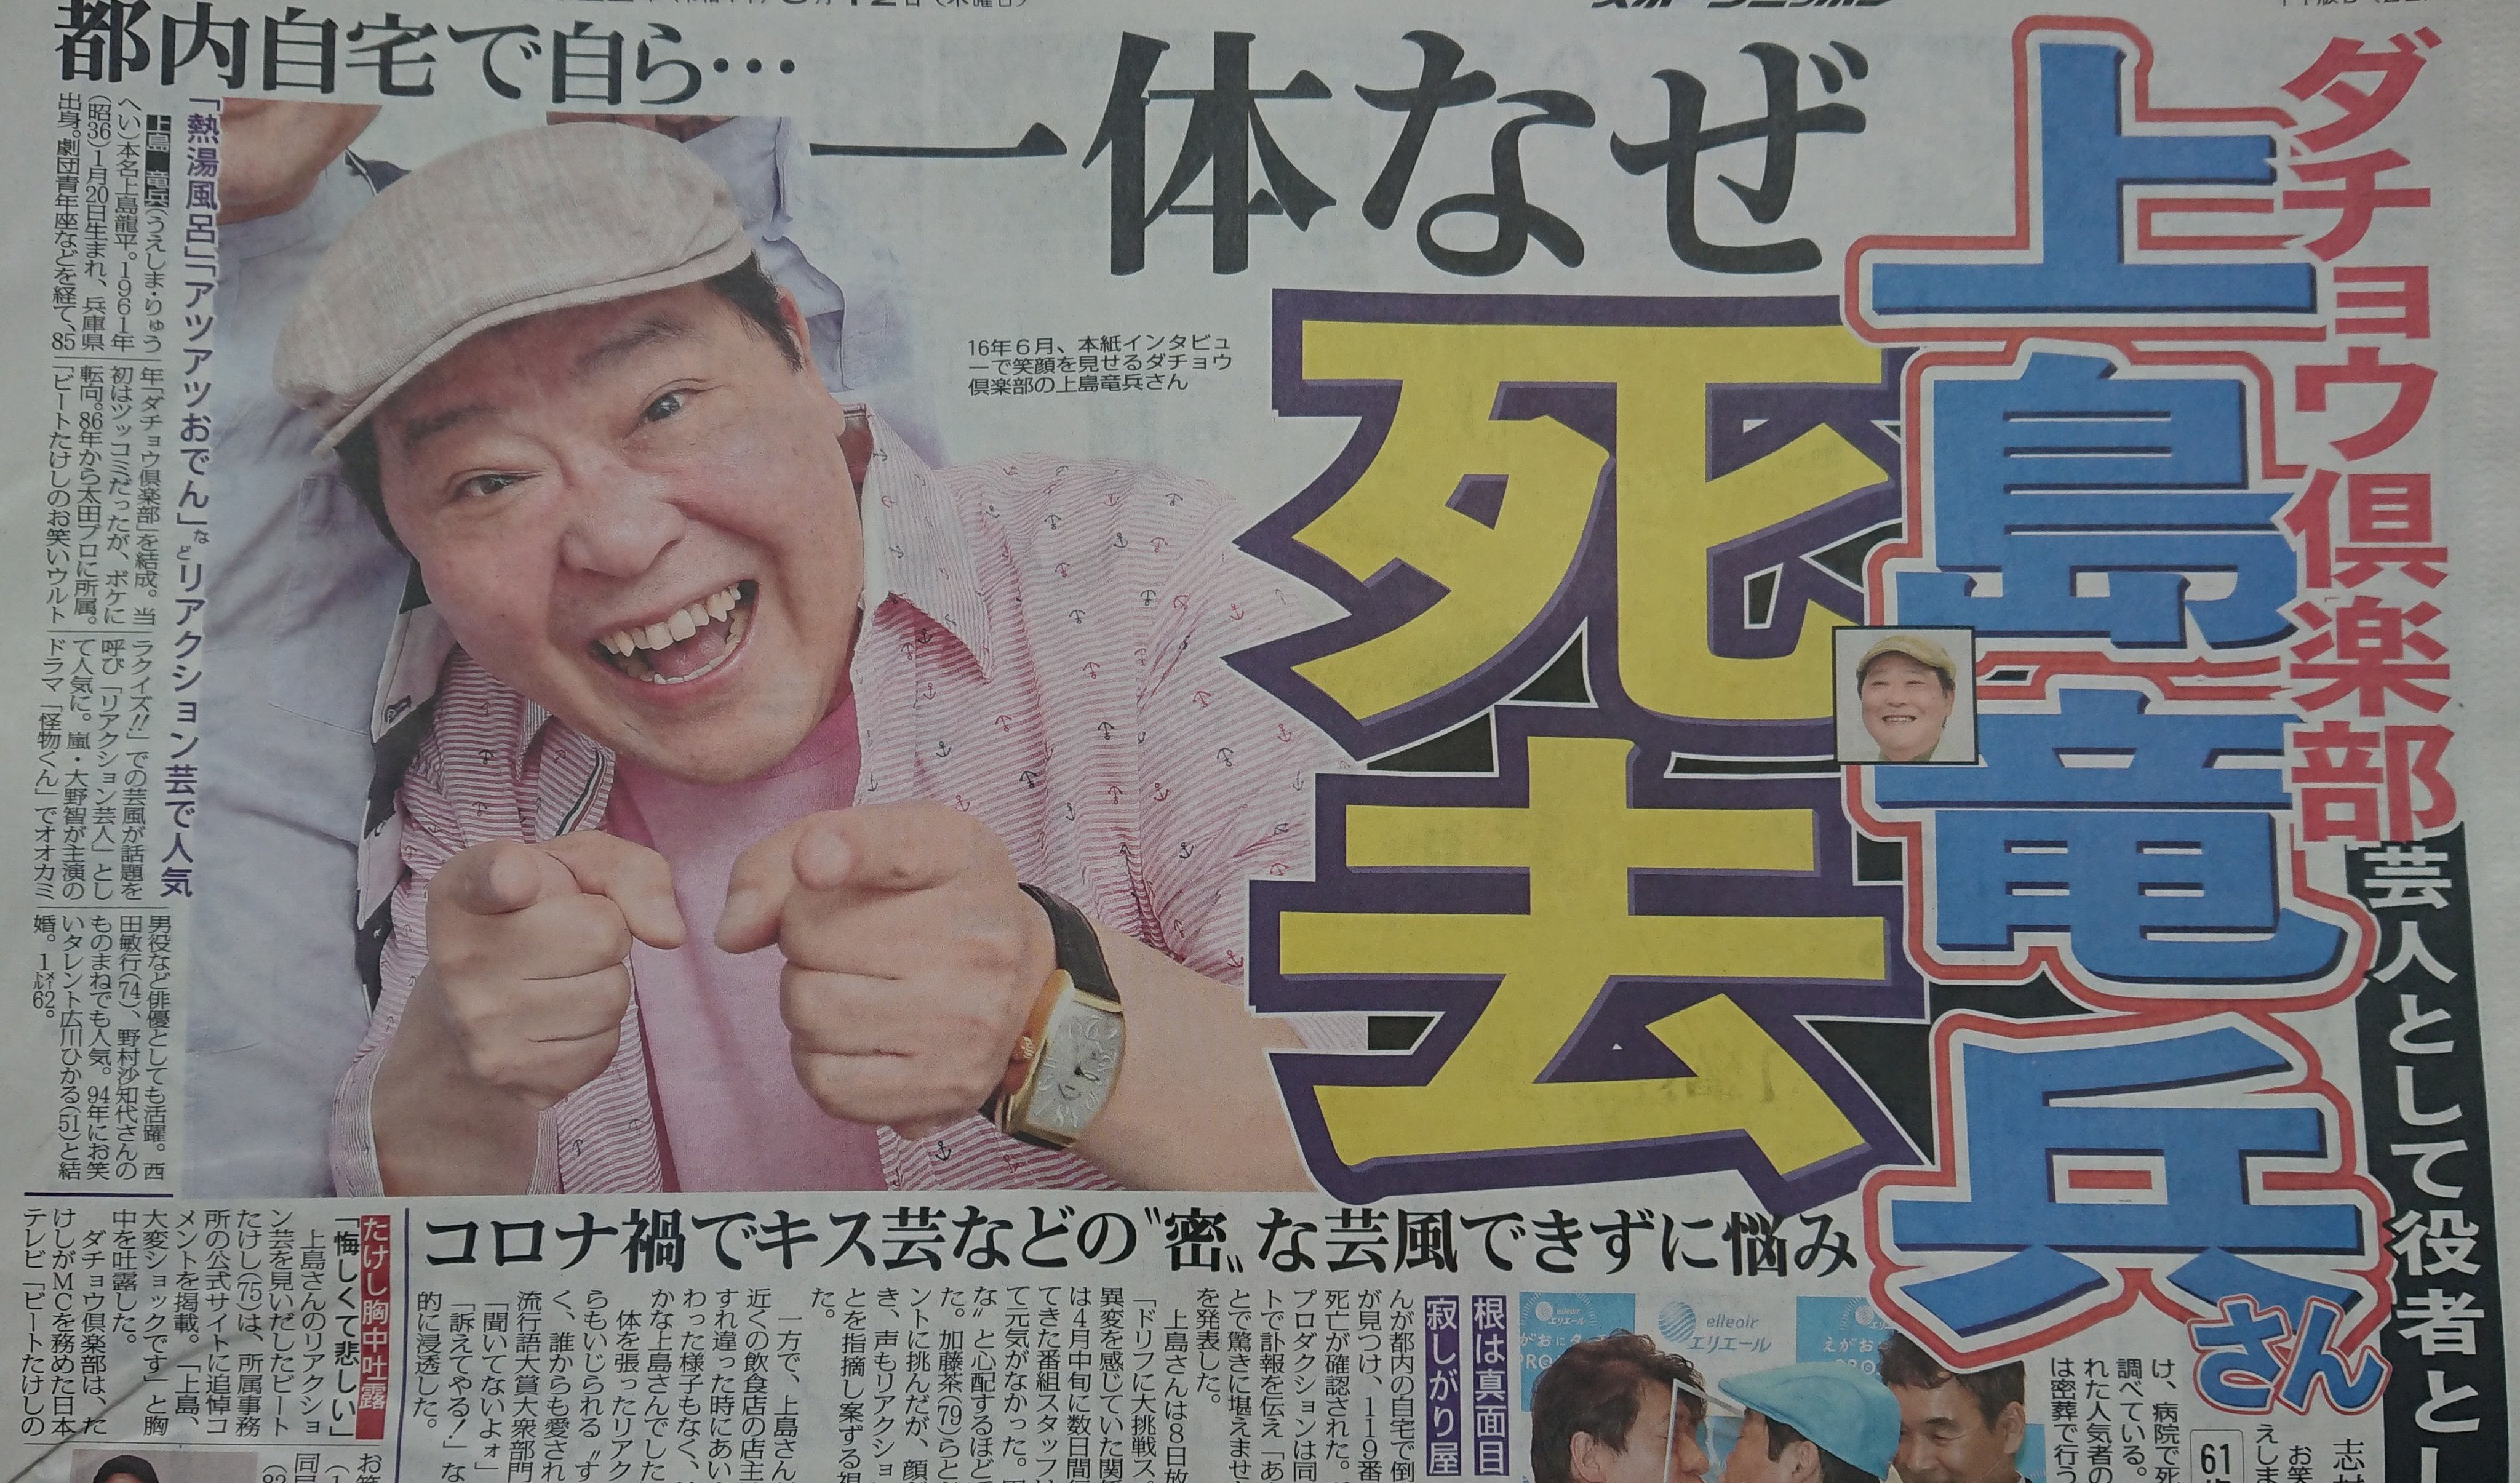 ダチョウ倶楽部の上島竜兵さんが亡くなった時のスポーツ新聞です